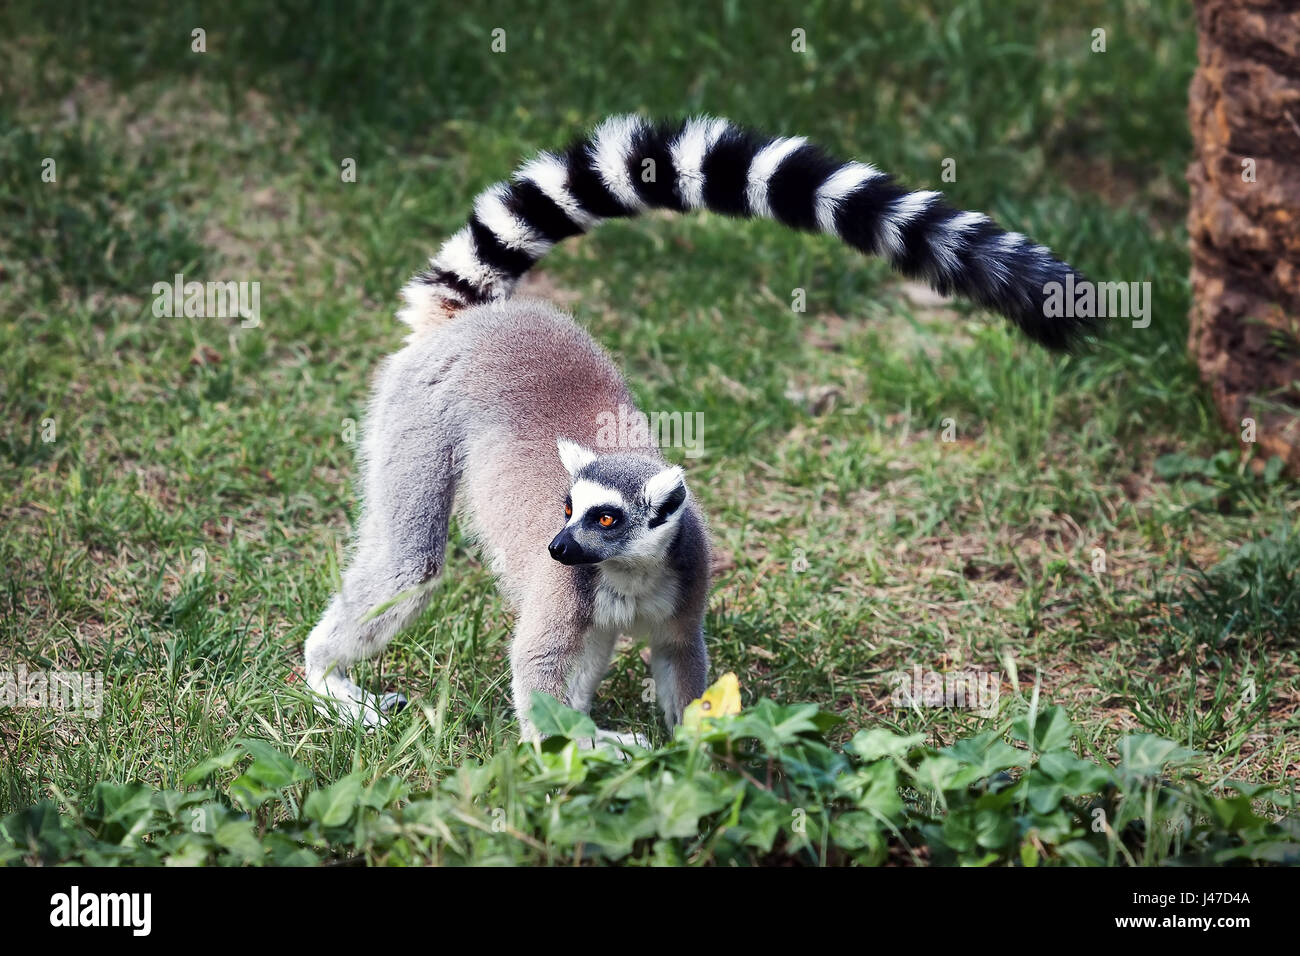 Lemur Ring Schwanz im Wald. Große Augen mit leuchtenden Farben und klassische Langarm-weiß-schwarze Ringe. Stockfoto